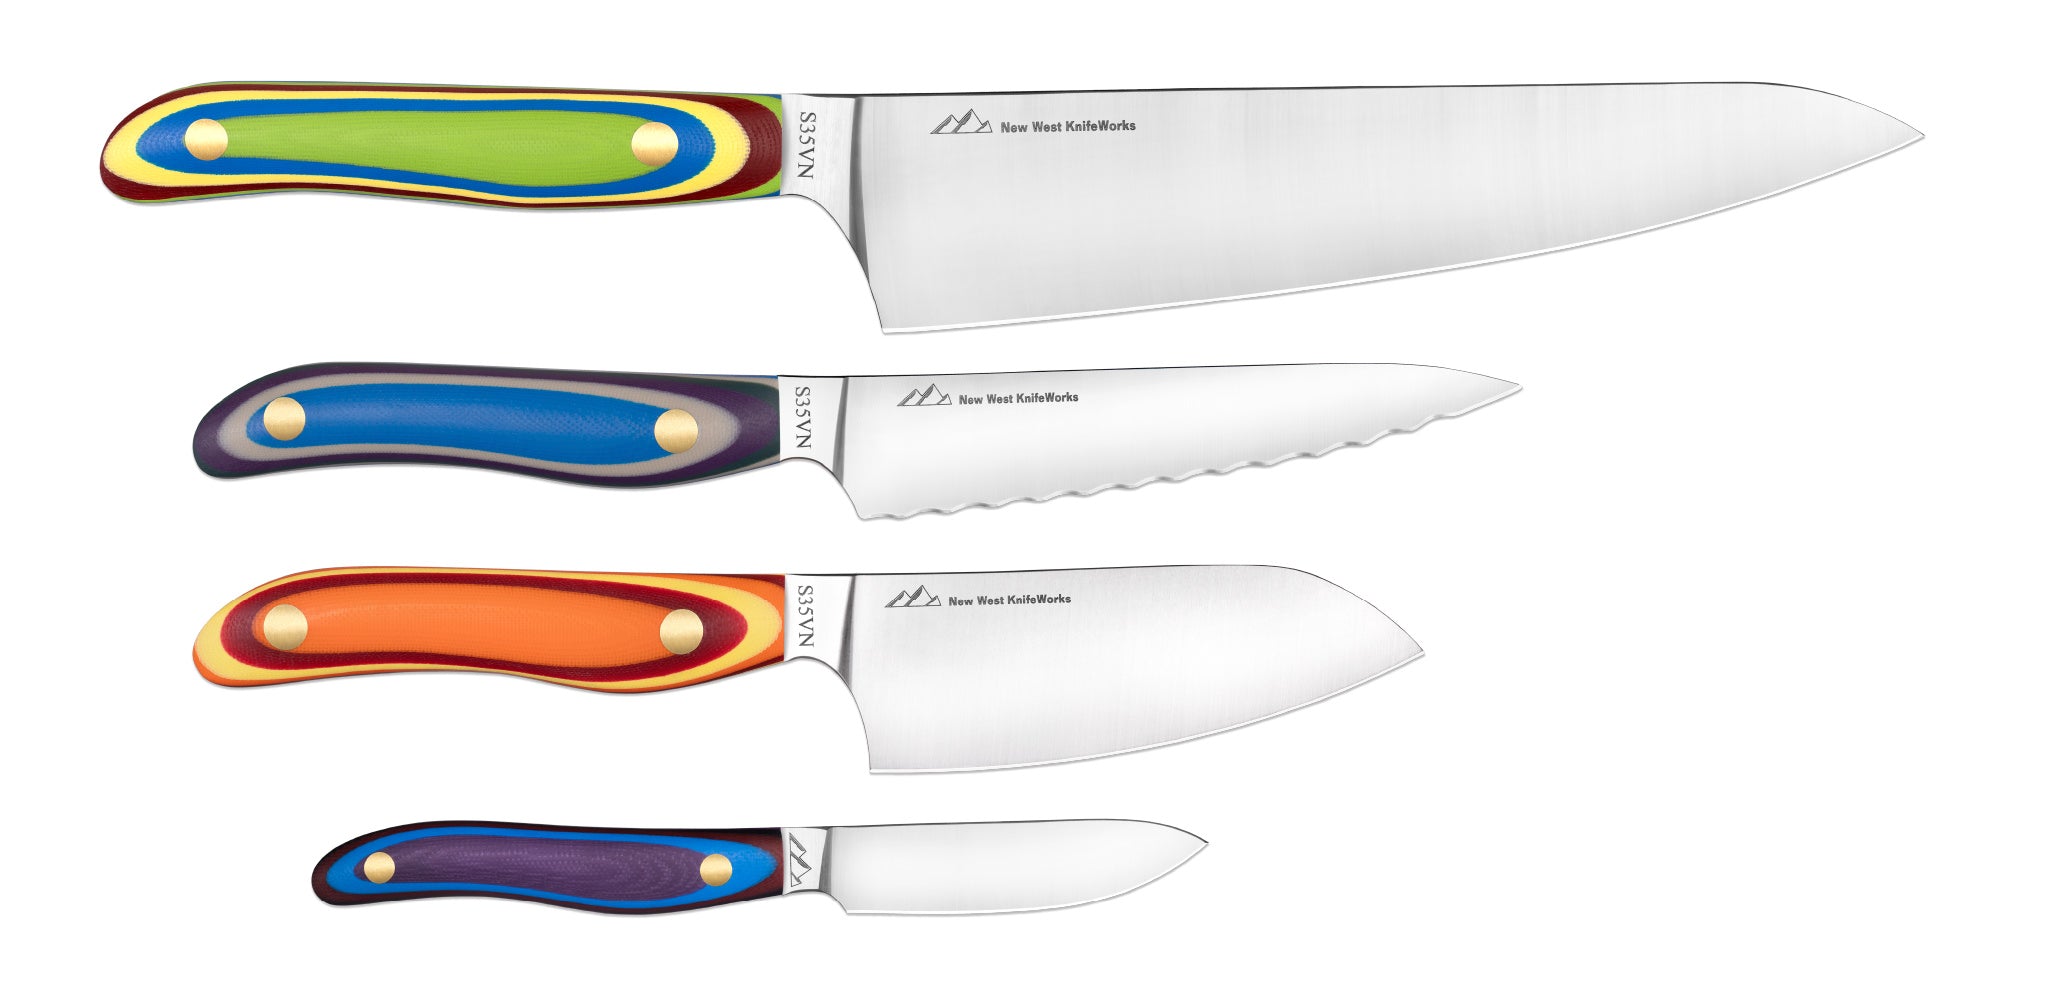 Best Seller Knife Set - New West KnifeWorks